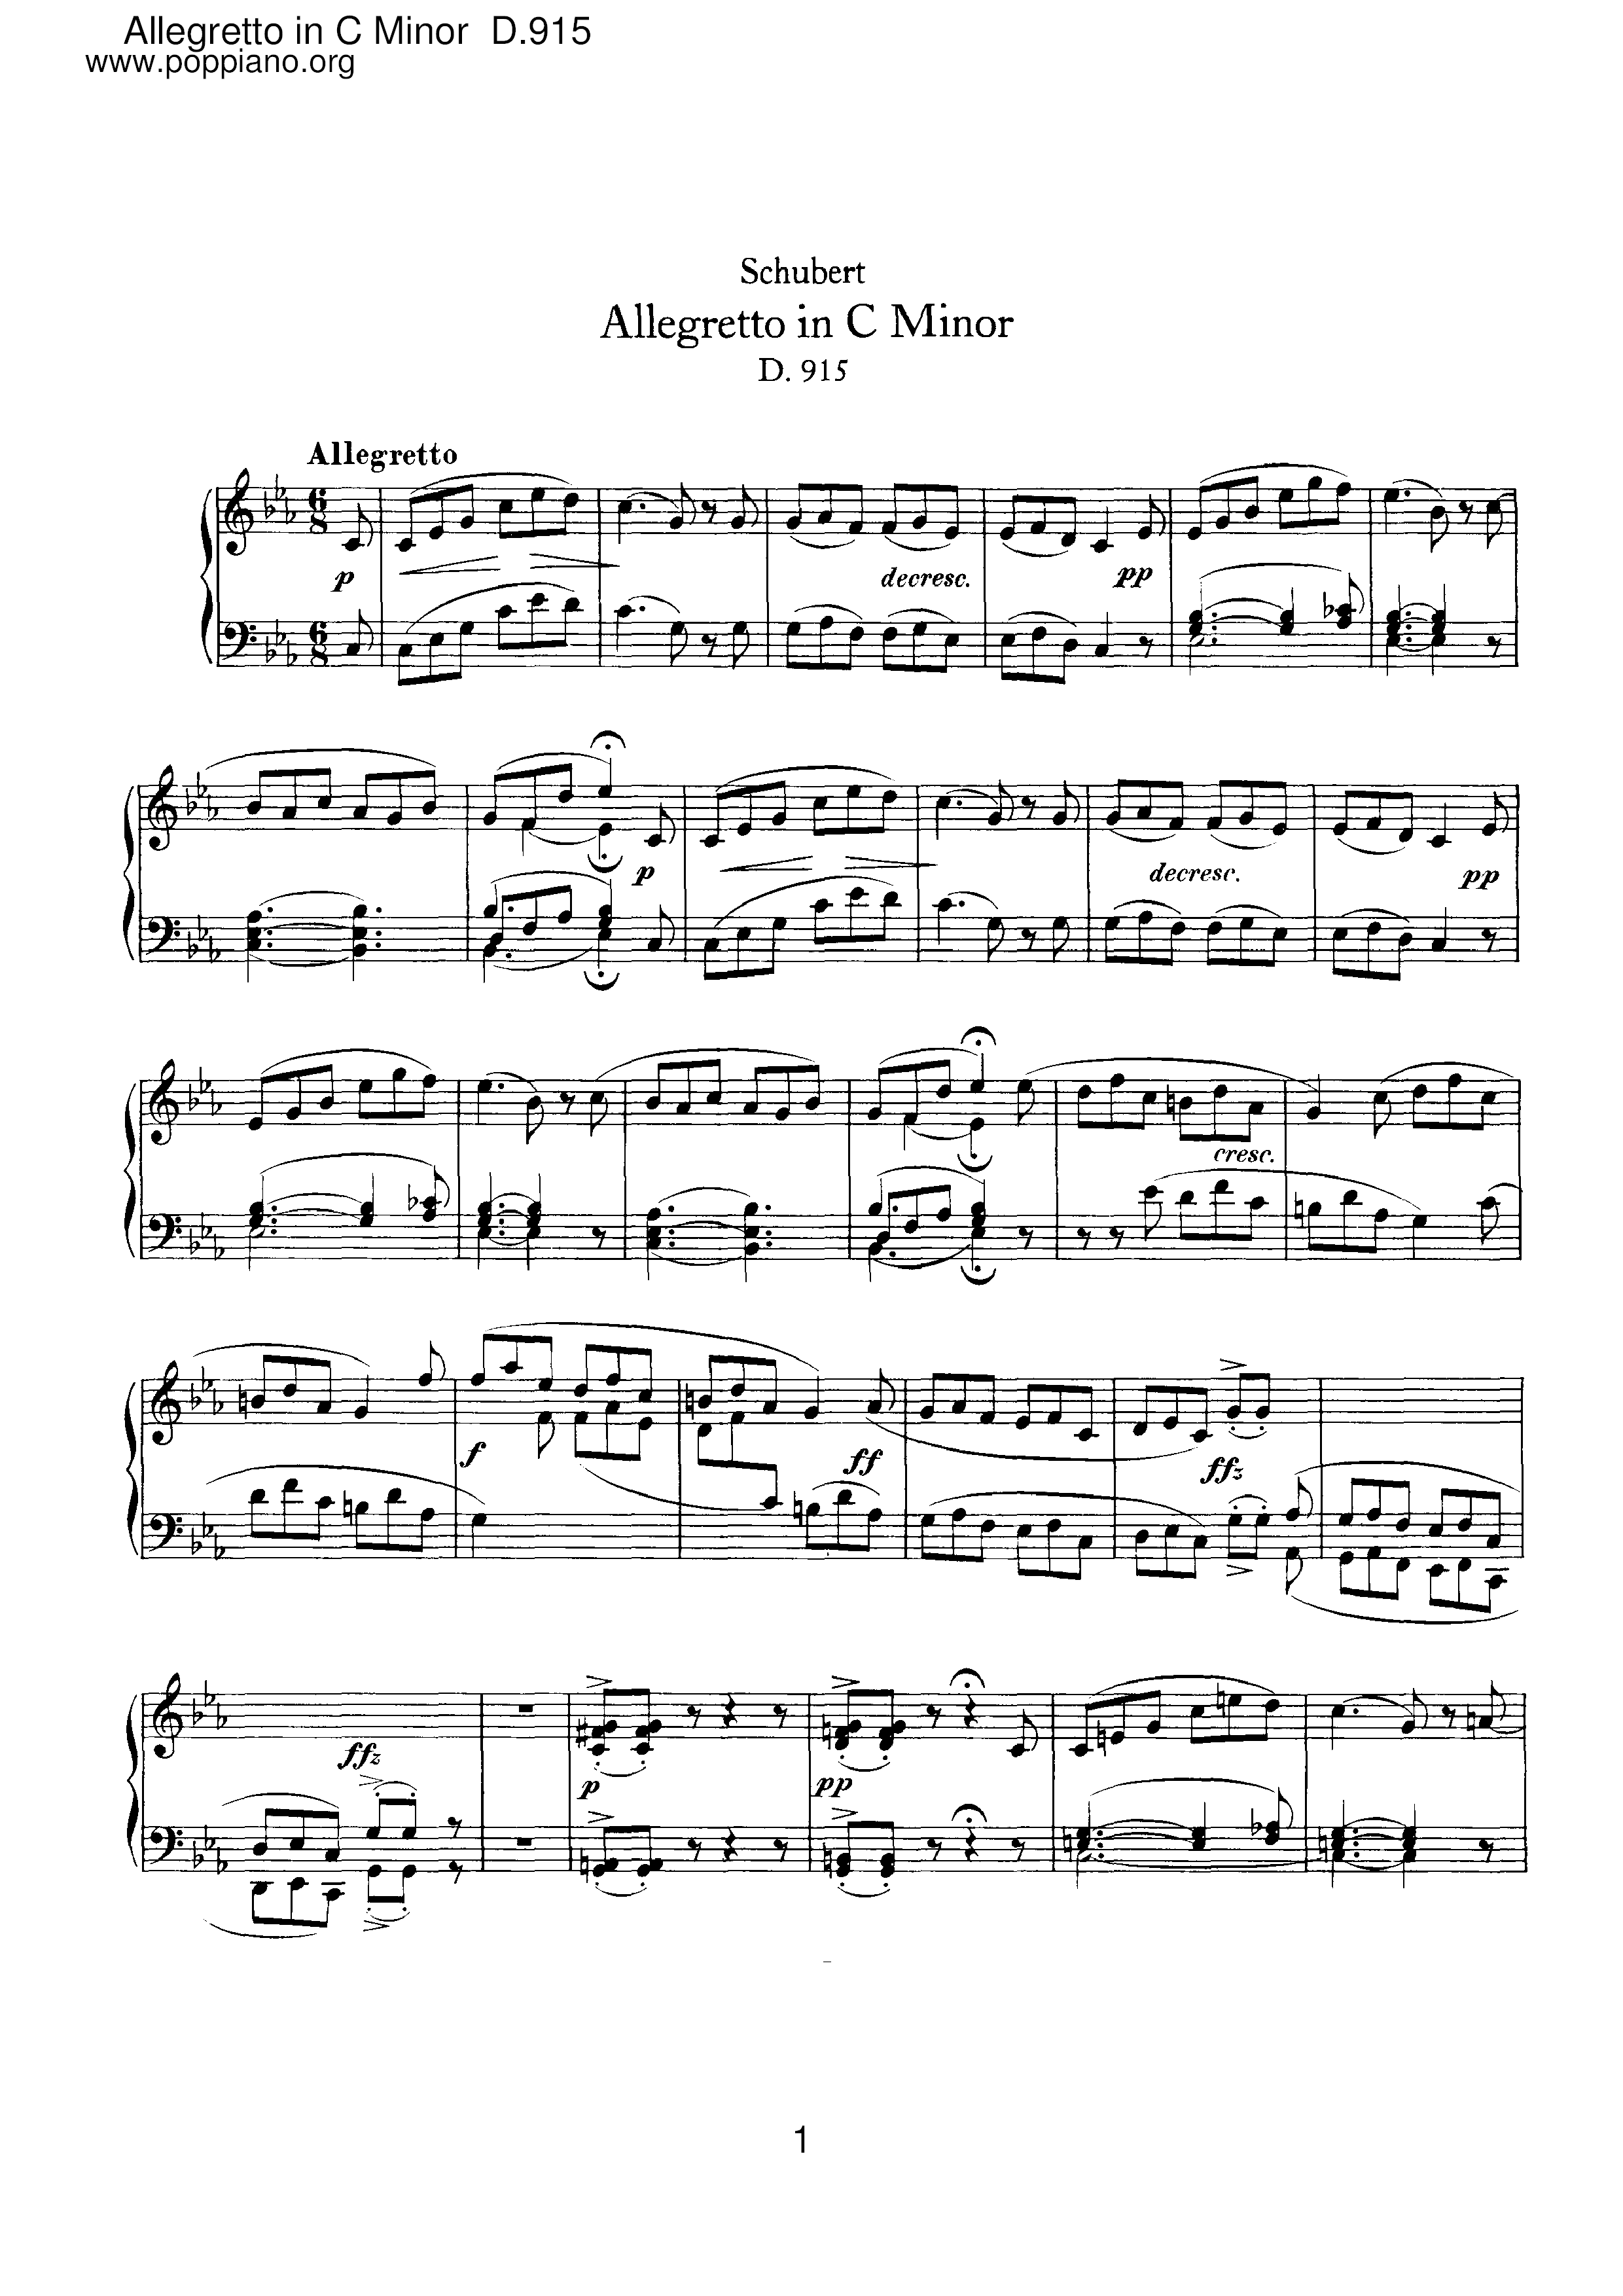 Allegretto in C minor, D.915 Score